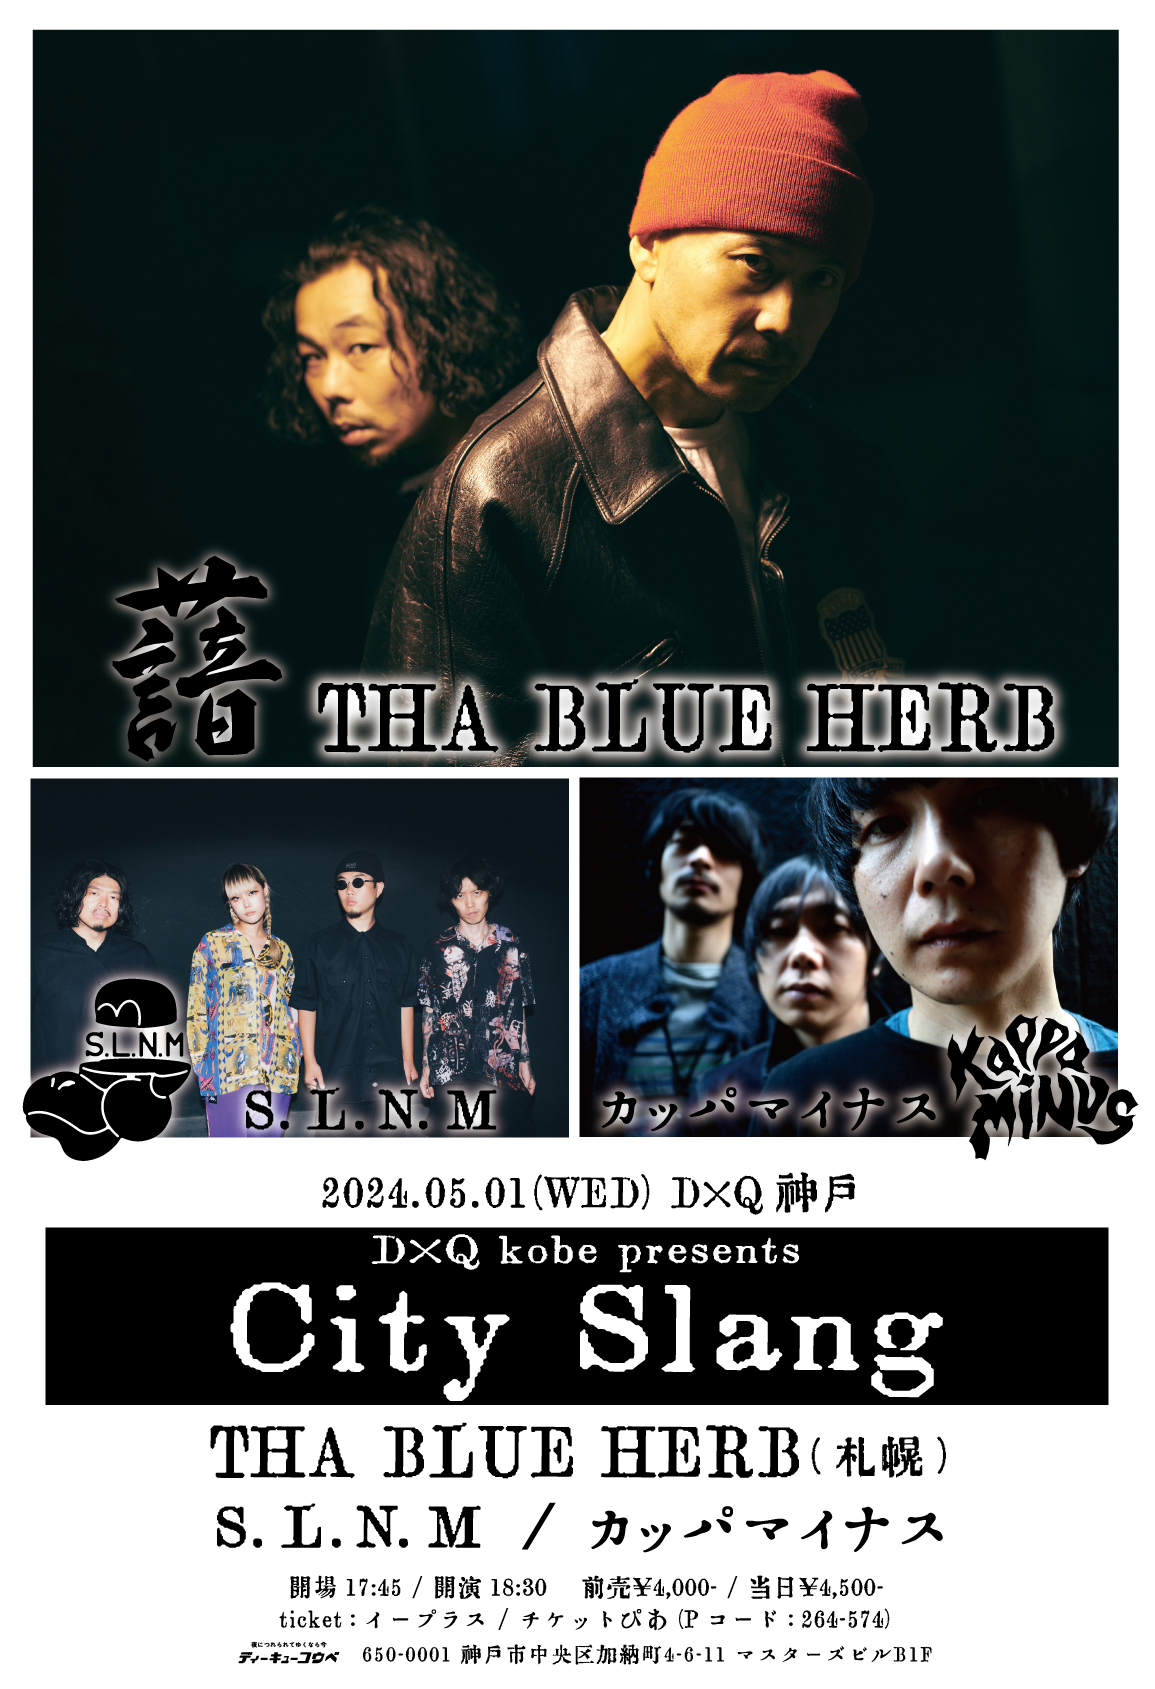 D×Q kobe presents「City Slang」